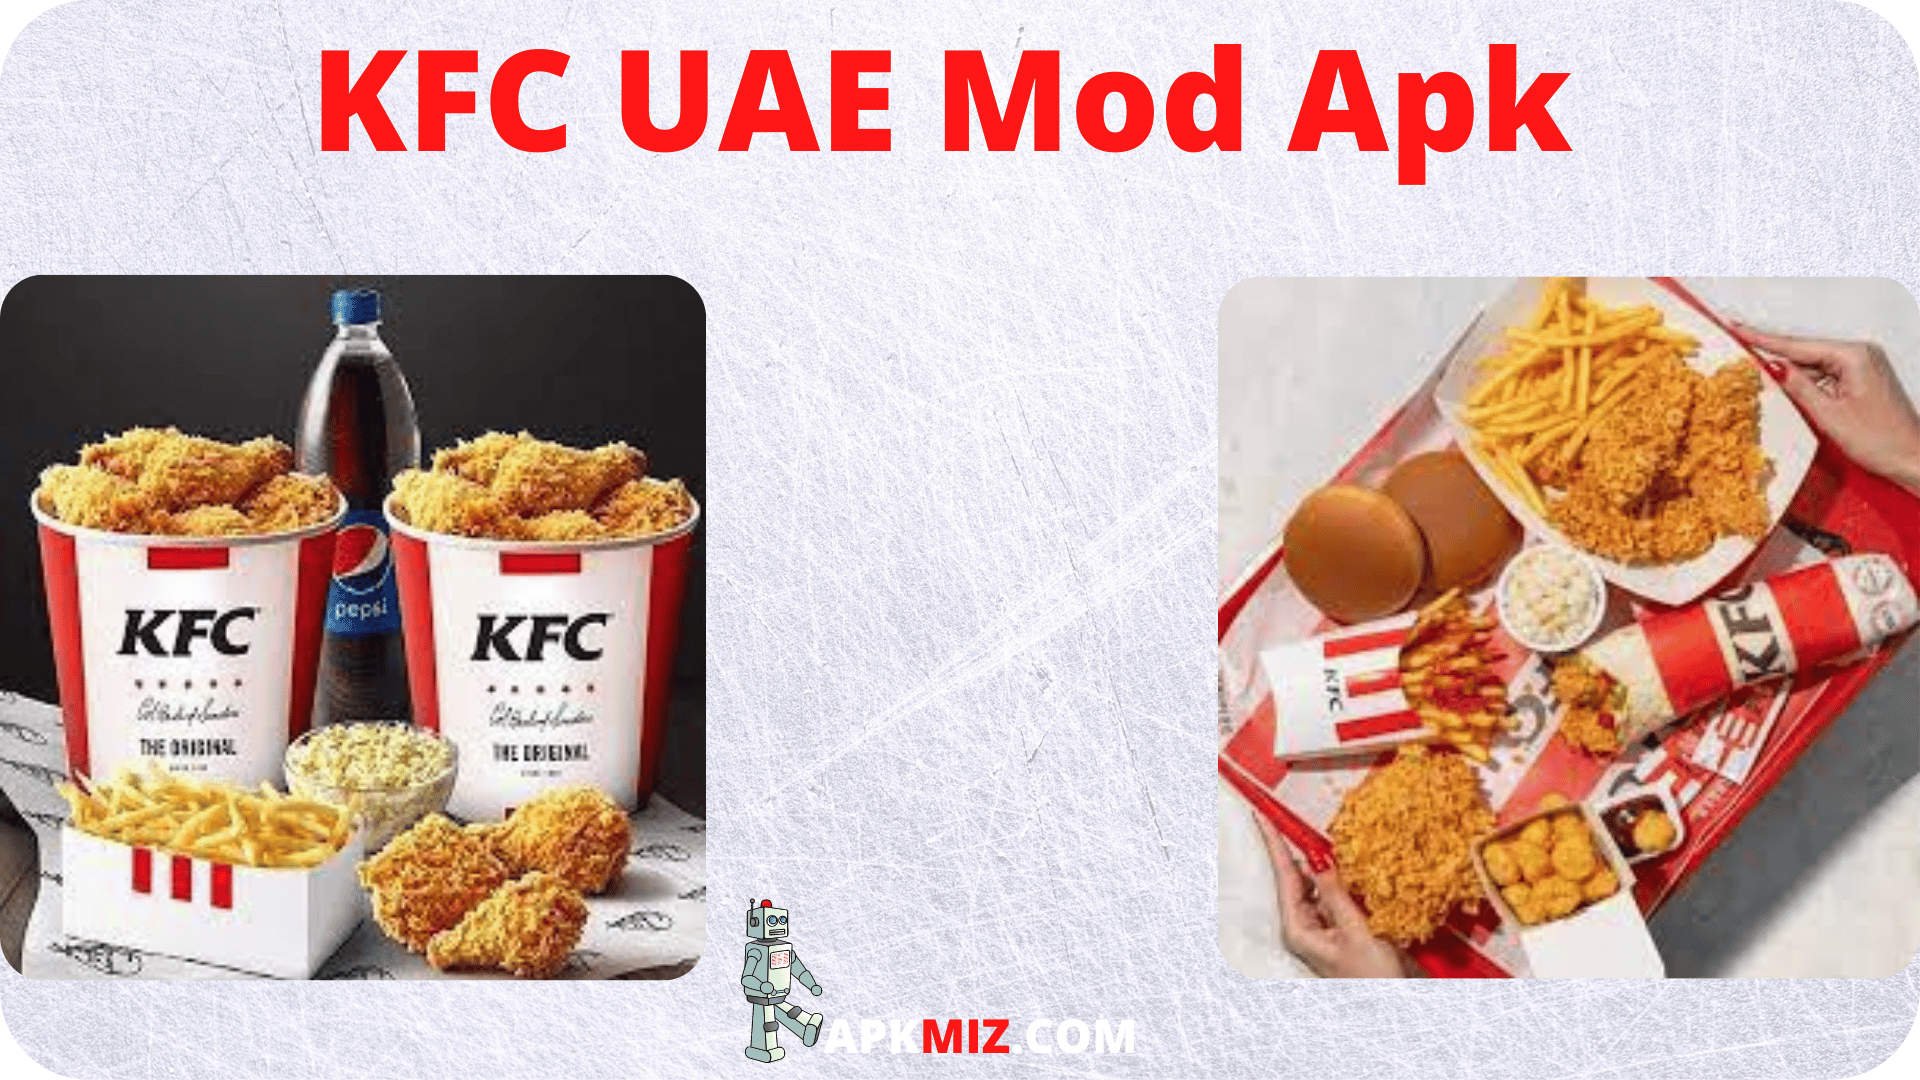 KFC UAE Mod Apk